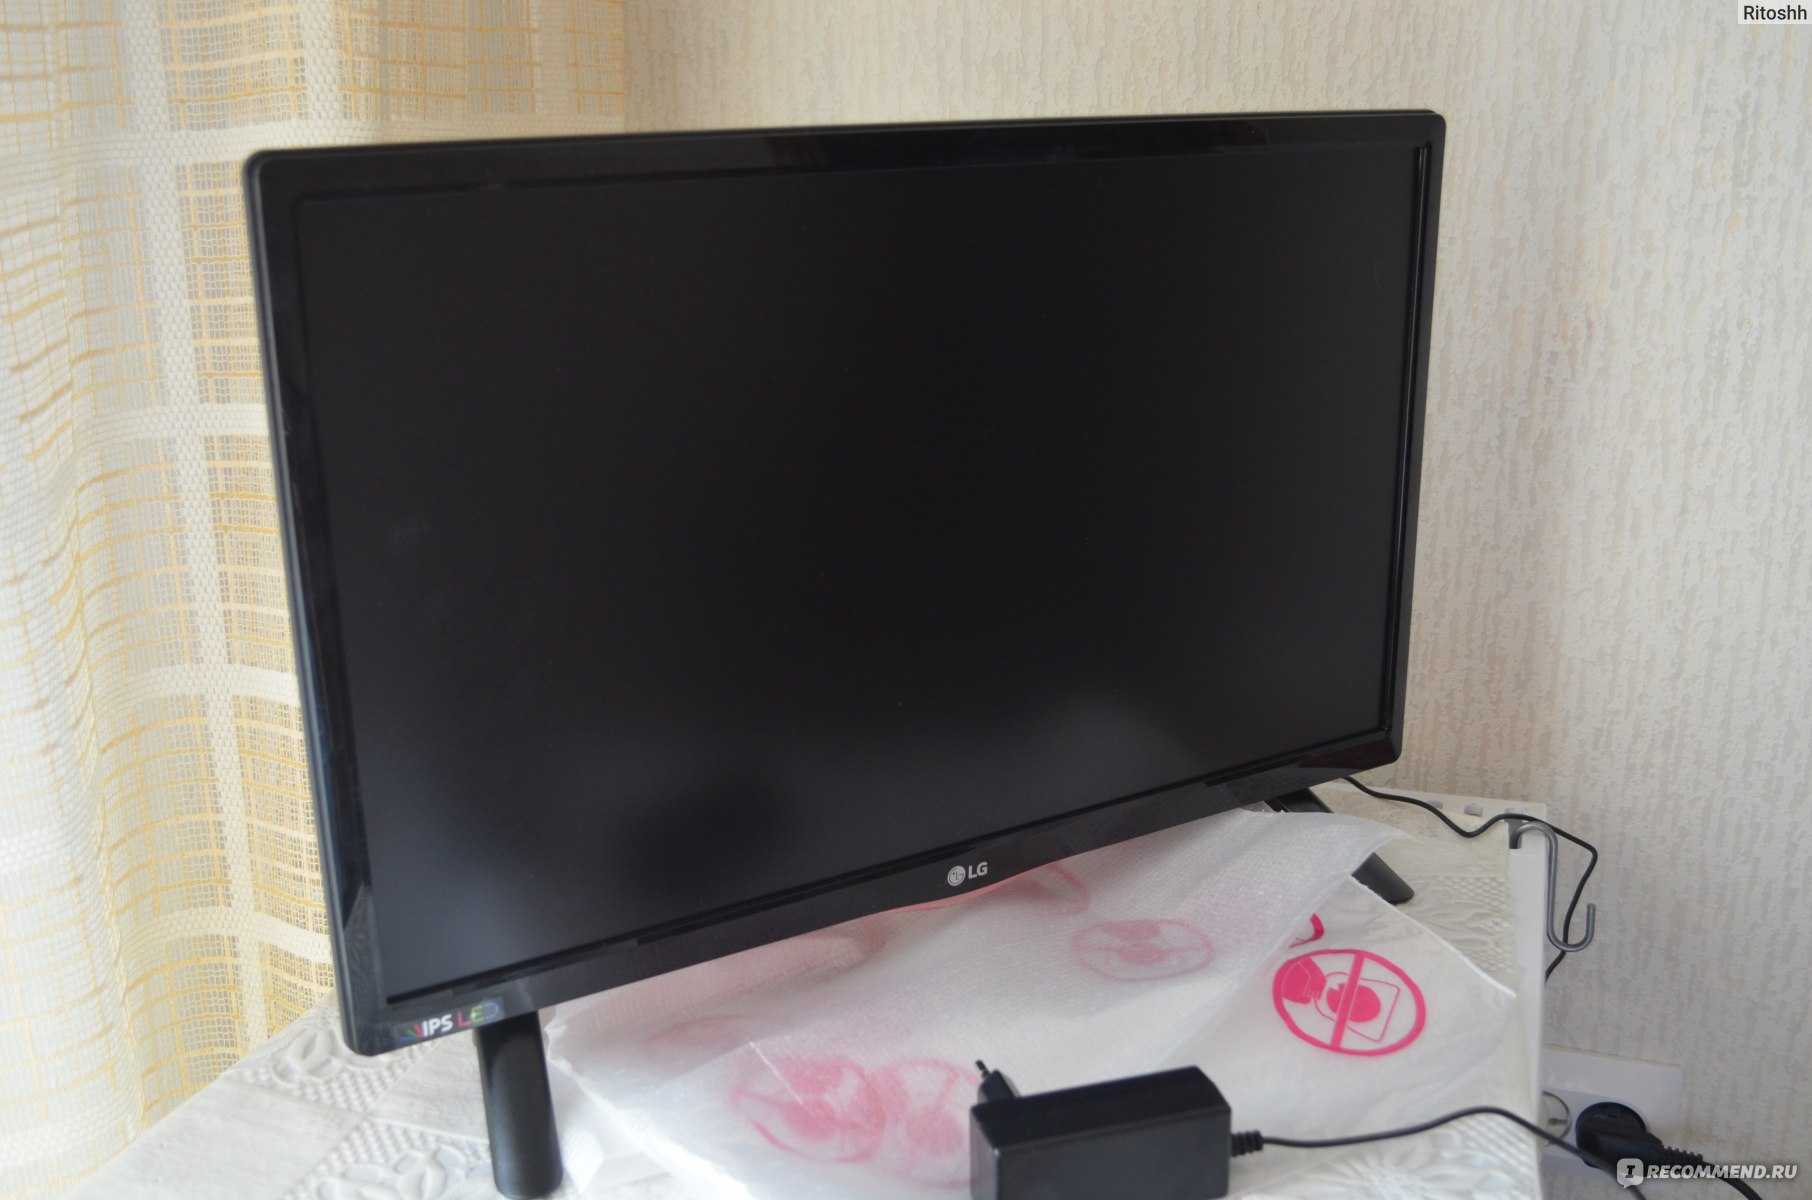 Led телевизор lg 22lh450v-pz (черный) купить от 9990 руб в перми, сравнить цены, отзывы, видео обзоры и характеристики